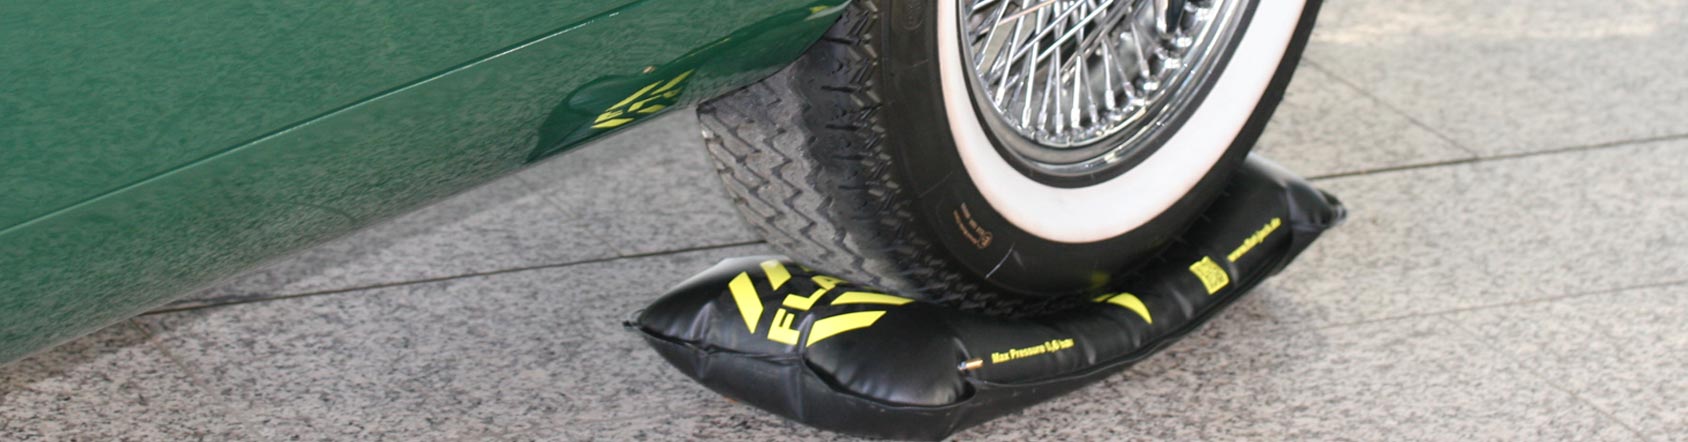 flat-jack Reifen-Luftkissen als Schutz vor Standplatten - jetzt bestellen